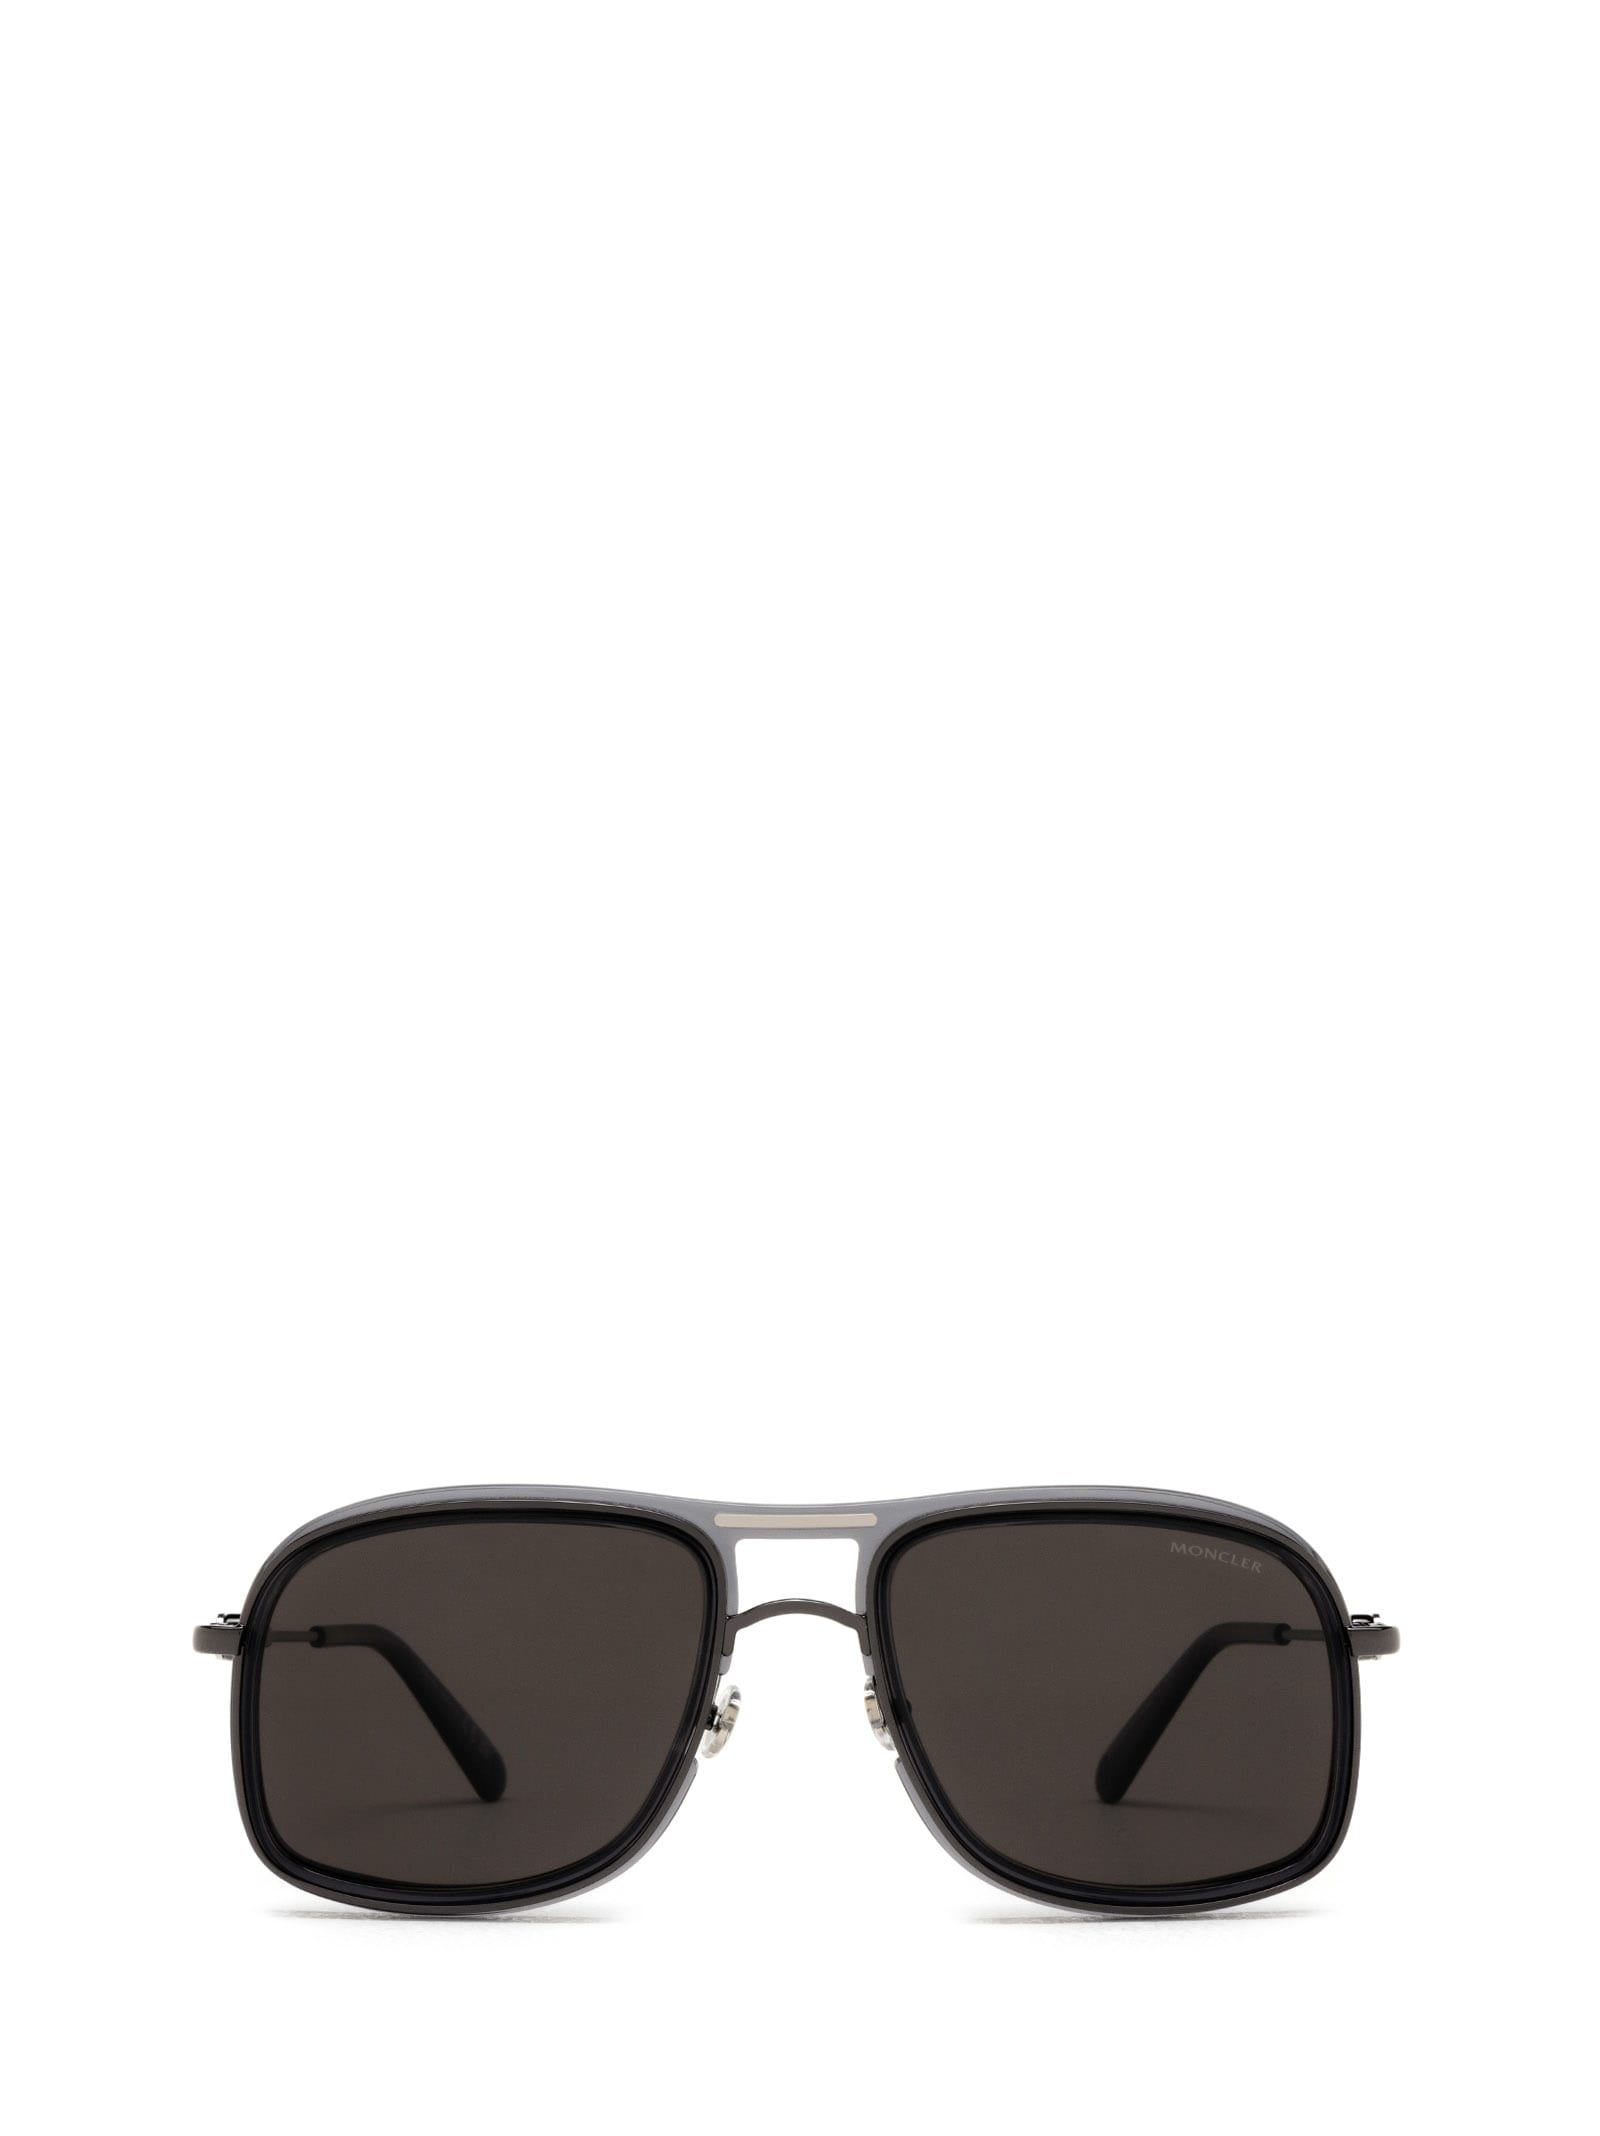 Moncler Ml0223 Shiny Black Sunglasses